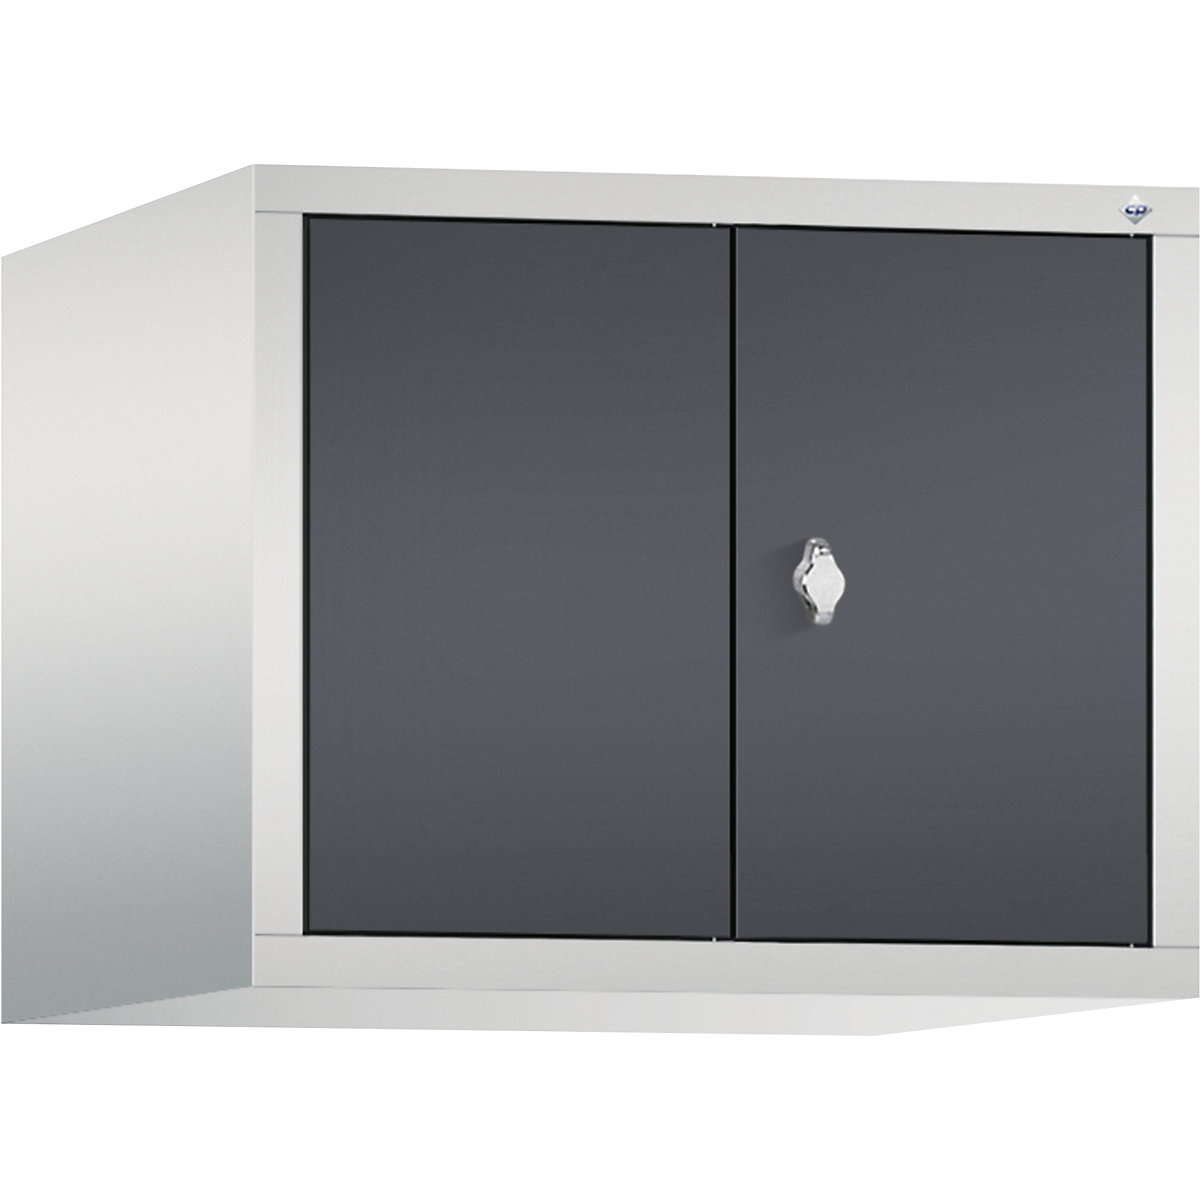 C+P – Dogradni ormar CLASSIC, vrata koja se zatvaraju jedna prema drugima, 2 odjela, širina odjela 300 mm, u svijetlosivoj / crnosivoj boji